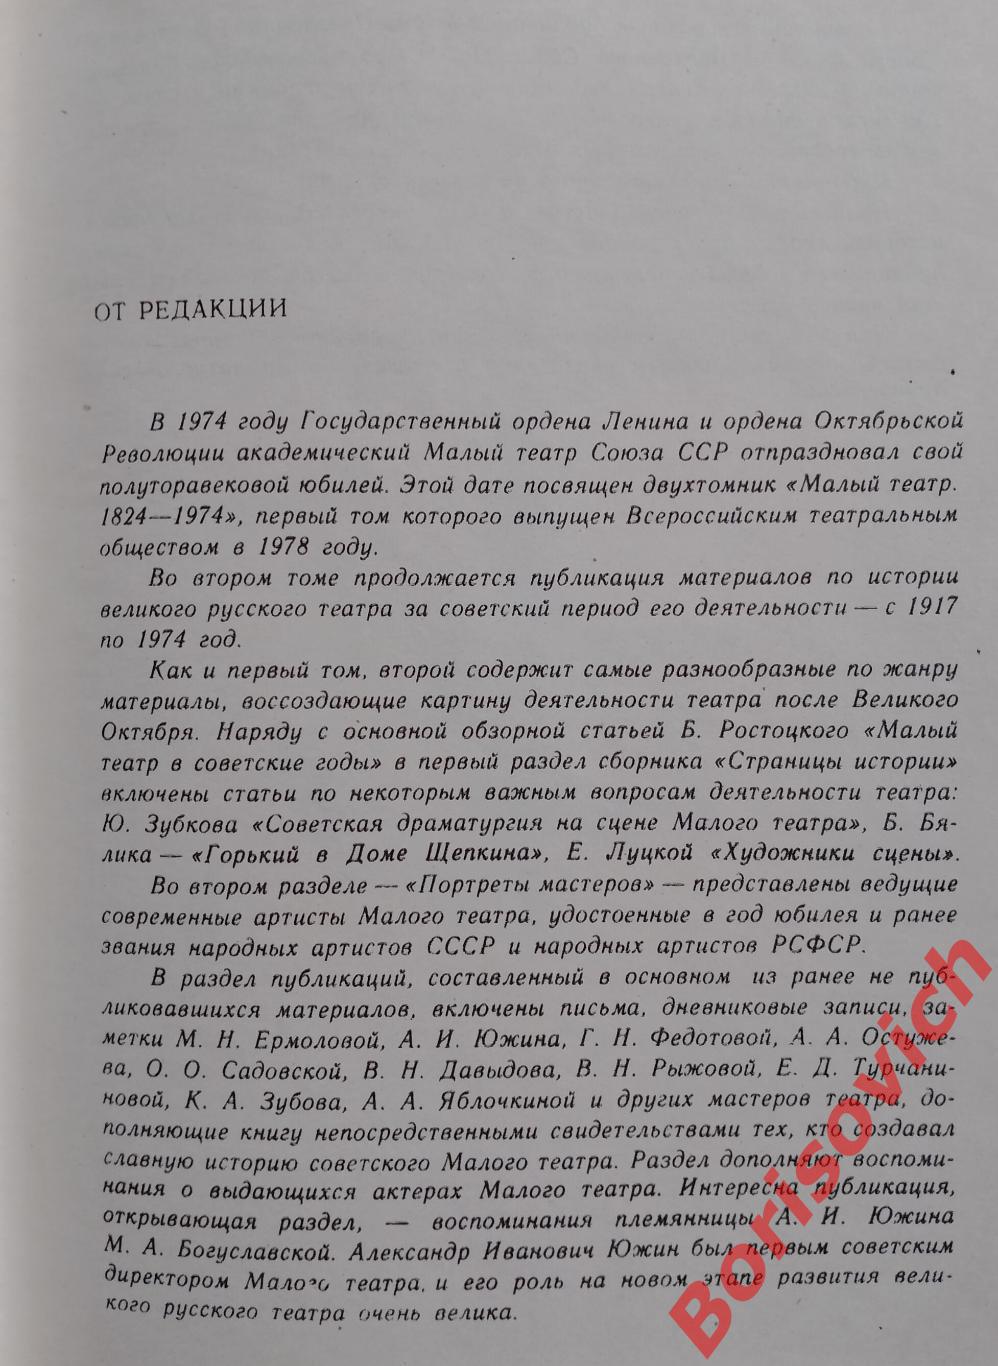 МАЛЫЙ ТЕАТР 1917 - 1974 гг Том 2. 752 стр Тираж 20 000 экз. 2